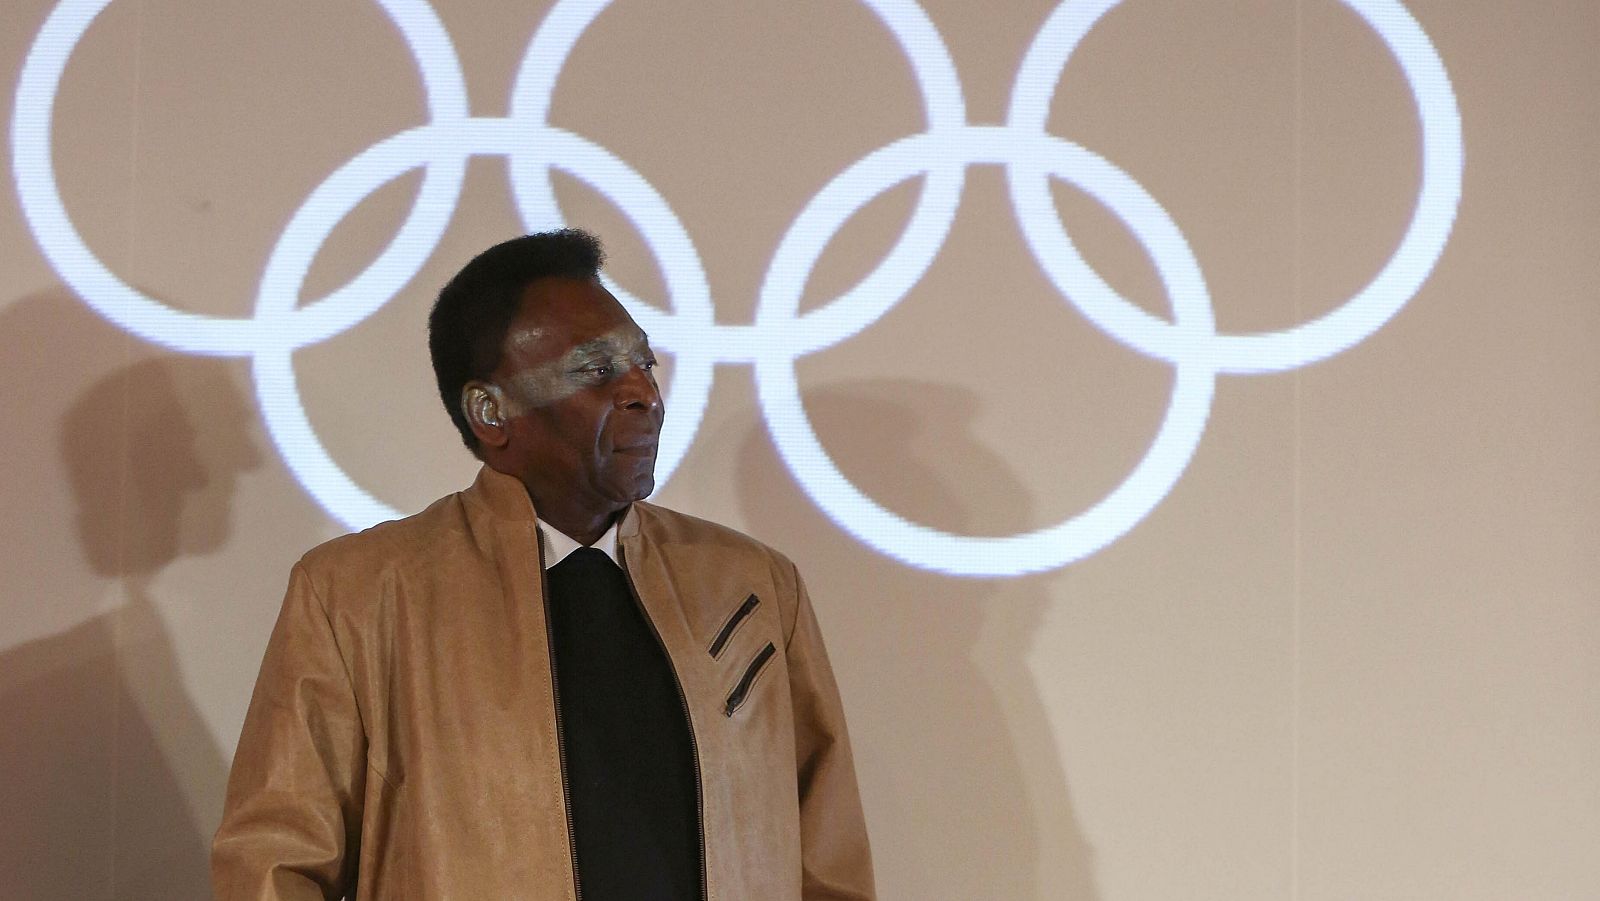 El exfutbolista Pelé, en el acto en que recibió una condecoración olímpica